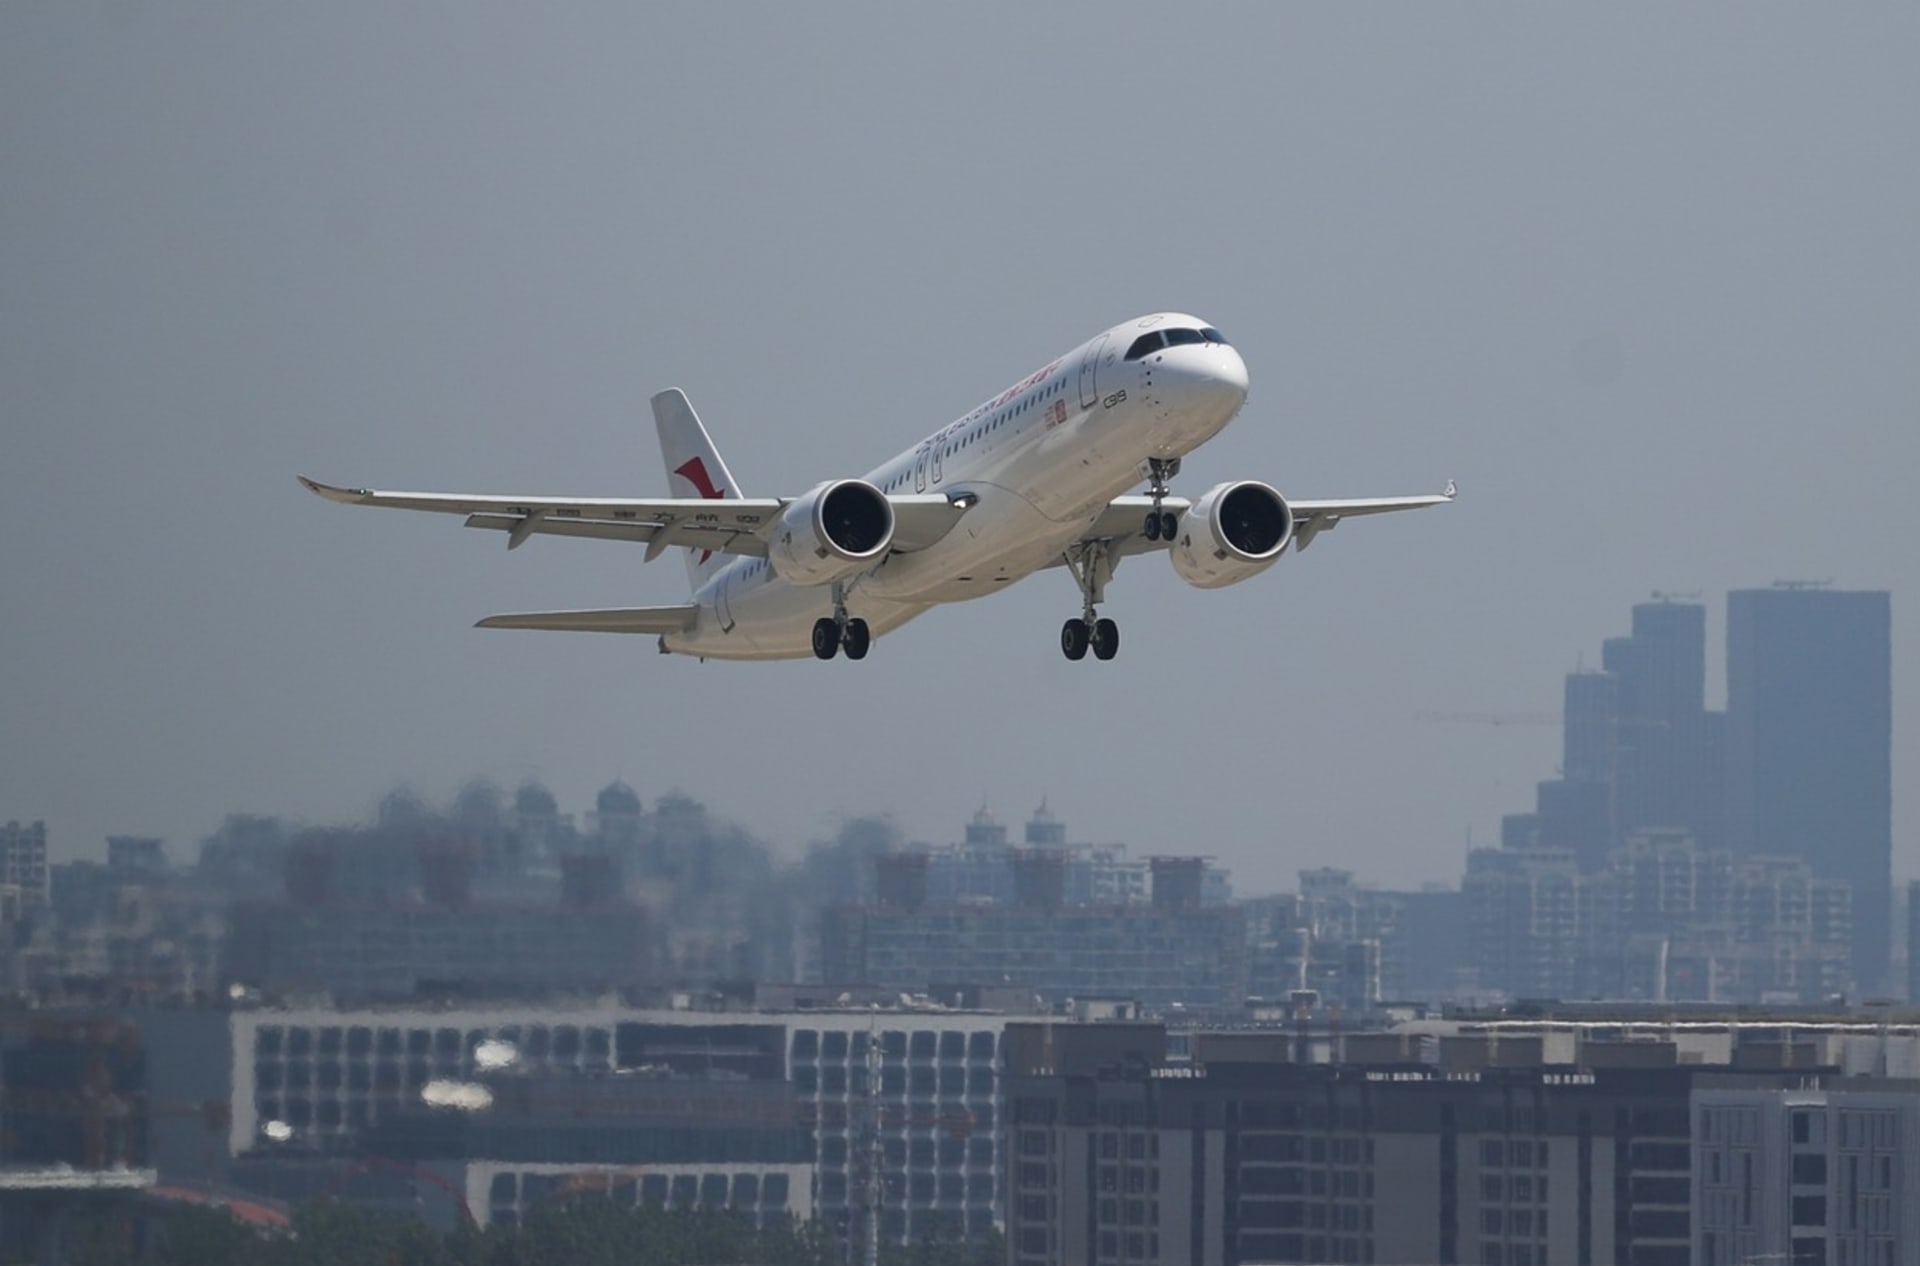 Letoun C919 absolvoval první komerční let s cestujícími pod hlavičkou společnosti China Eastern Airlines mezi Šanghají a Pekingem.